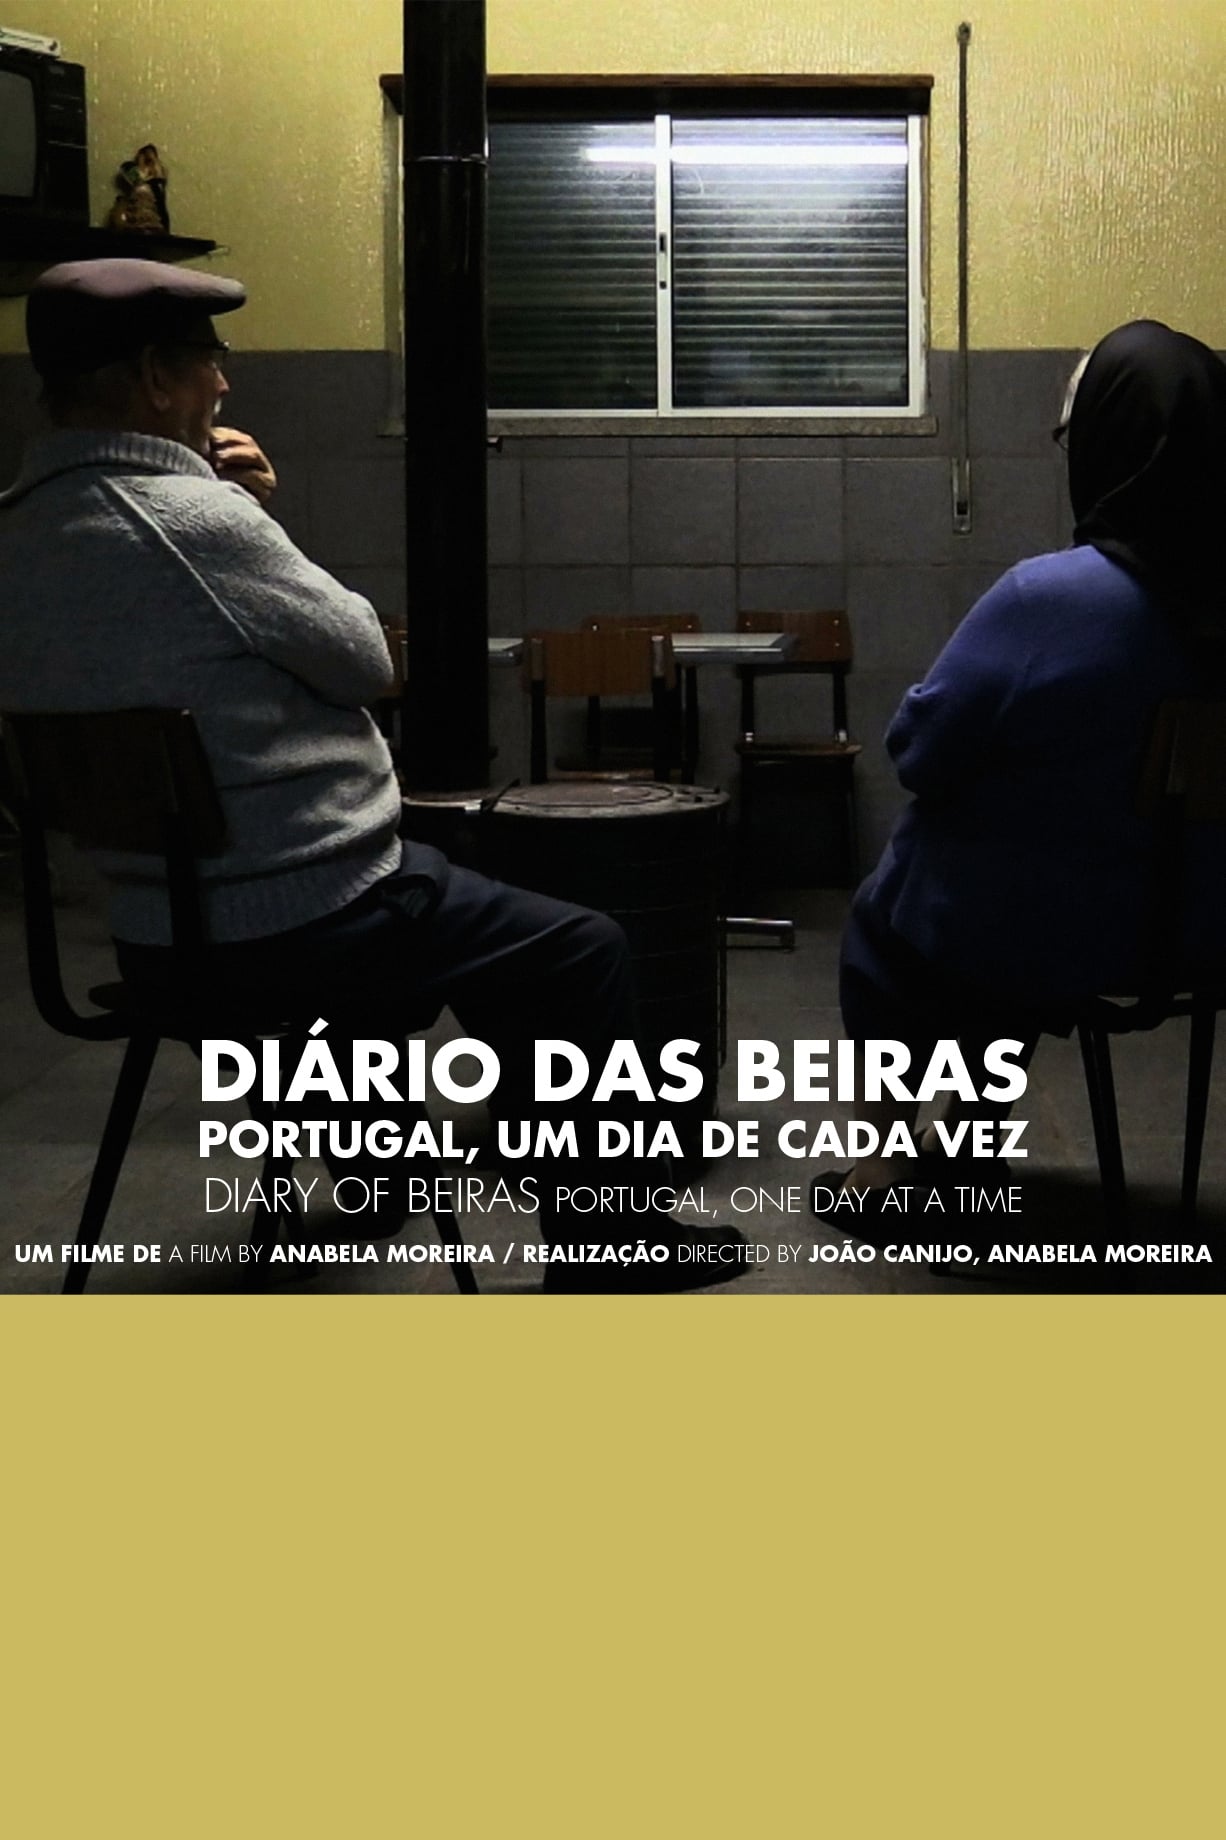 Diary of Beiras